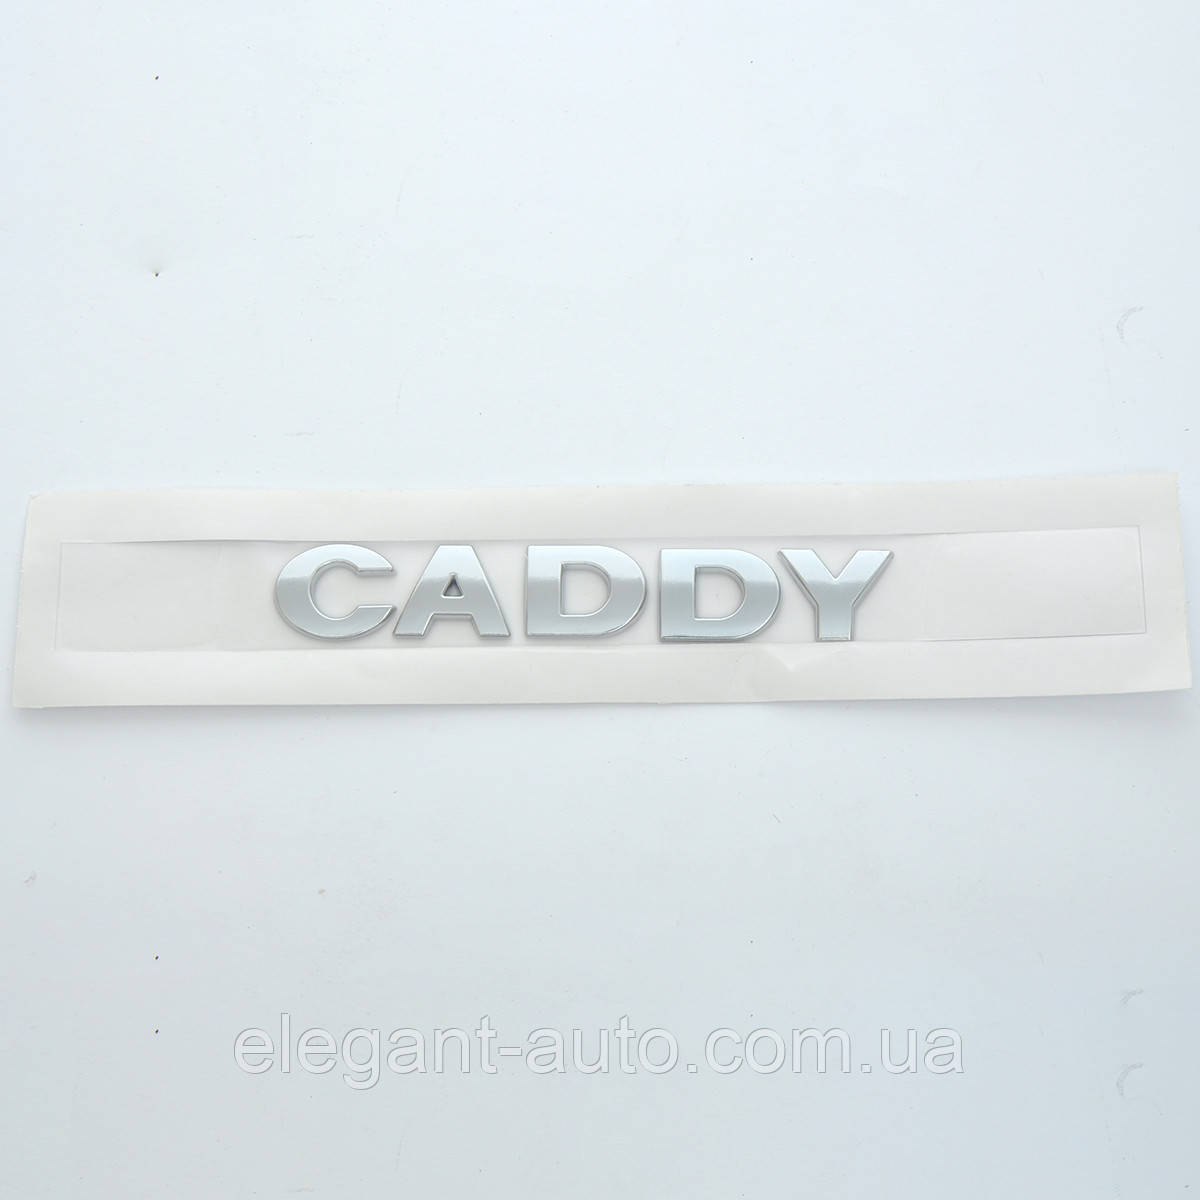 Эмблема - надпись  "CADDY" скотч 171х25 мм 2004-2011 (wiwo 2KO 853 687 739)